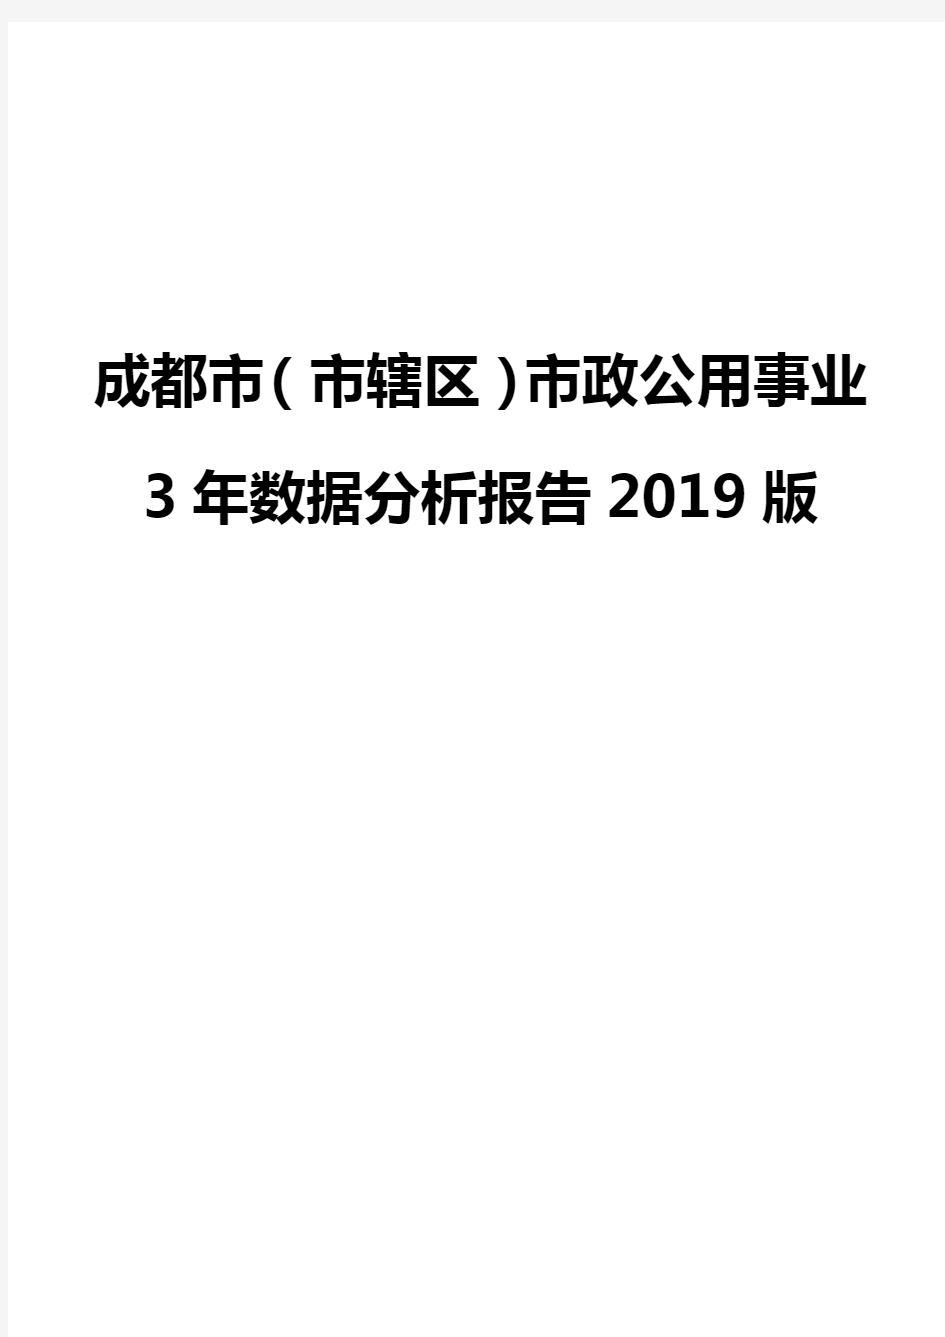 成都市(市辖区)市政公用事业3年数据分析报告2019版